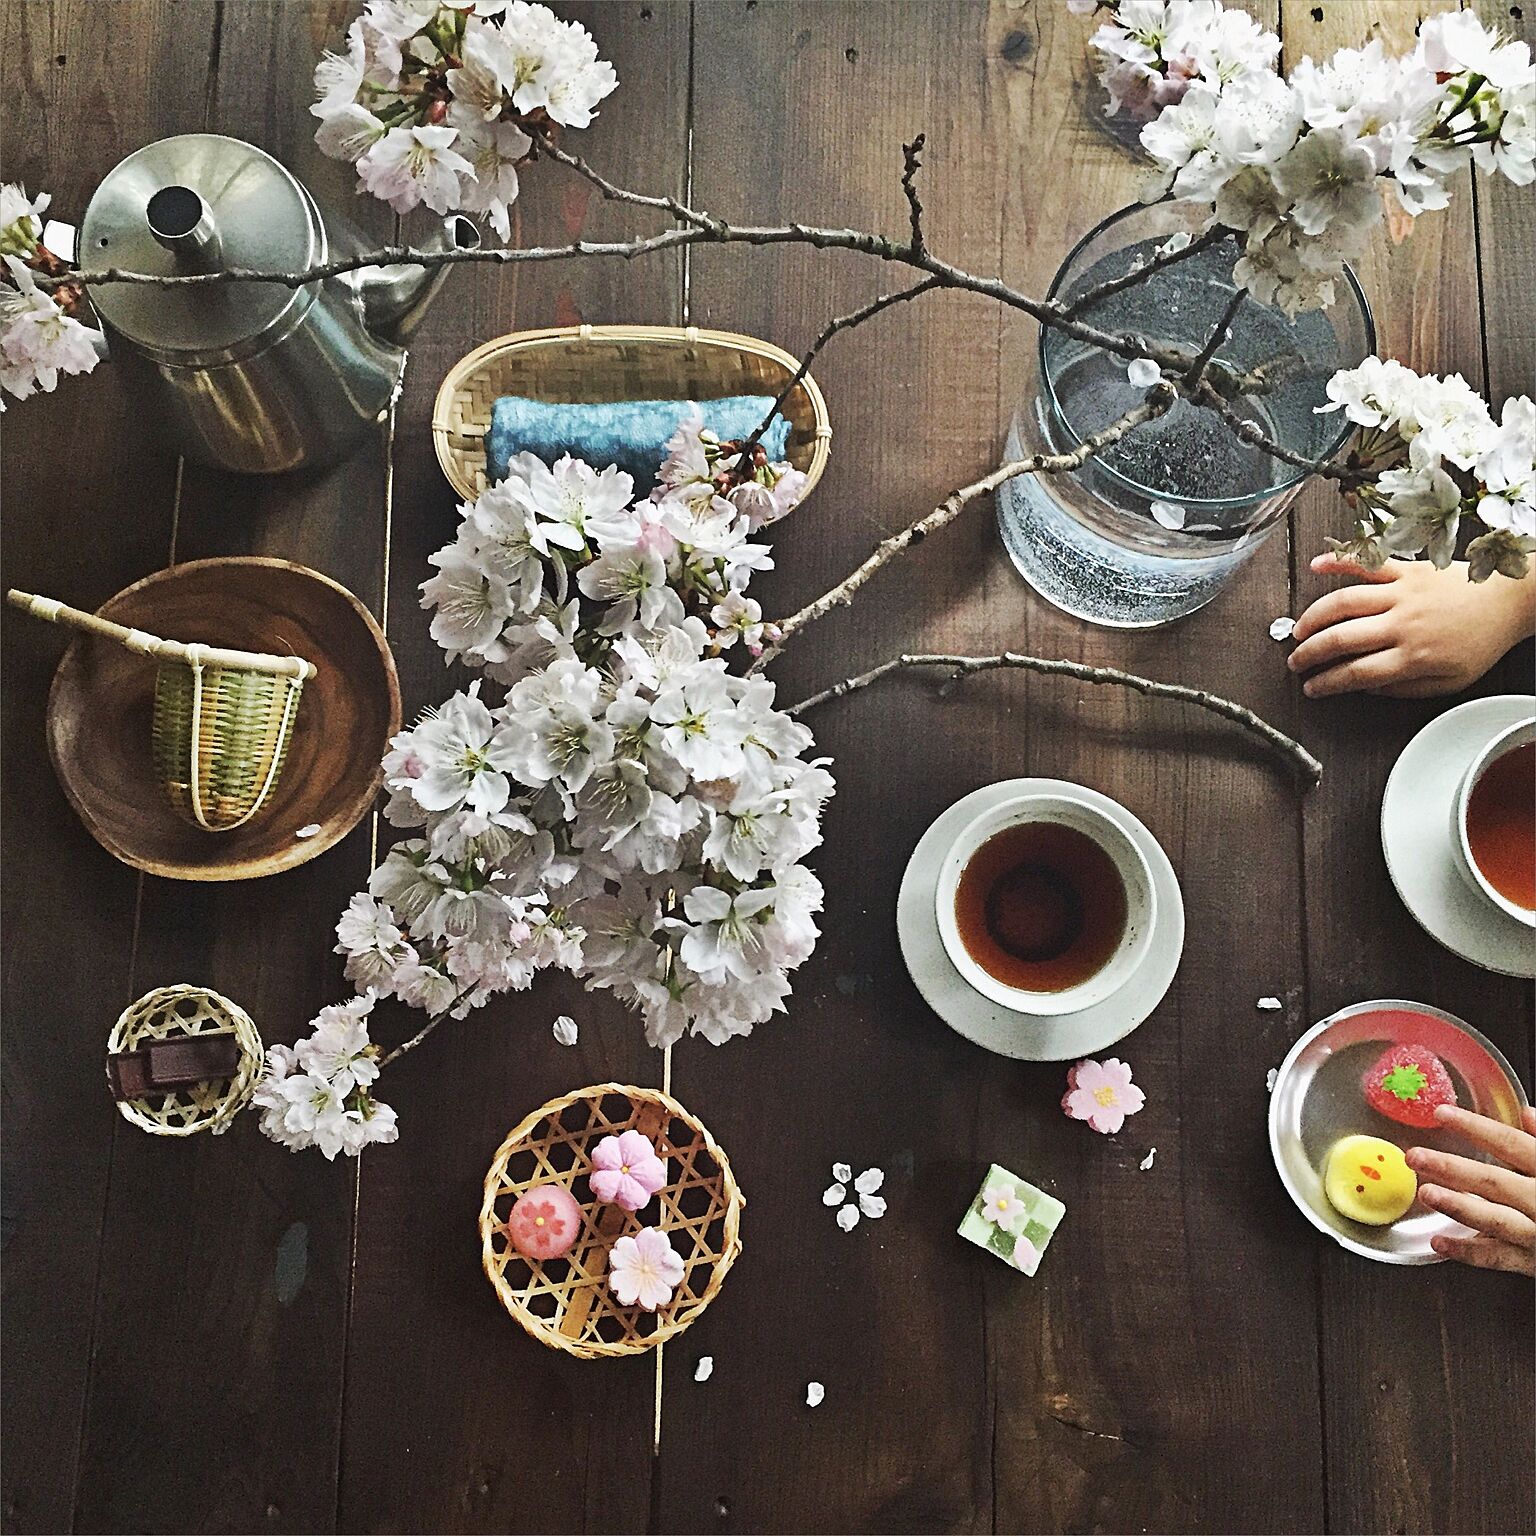 和空間で楽しむおうちカフェも素敵です。テーブルの中心で咲き誇る桜から、はらはらと散る花びらに風情を感じます。